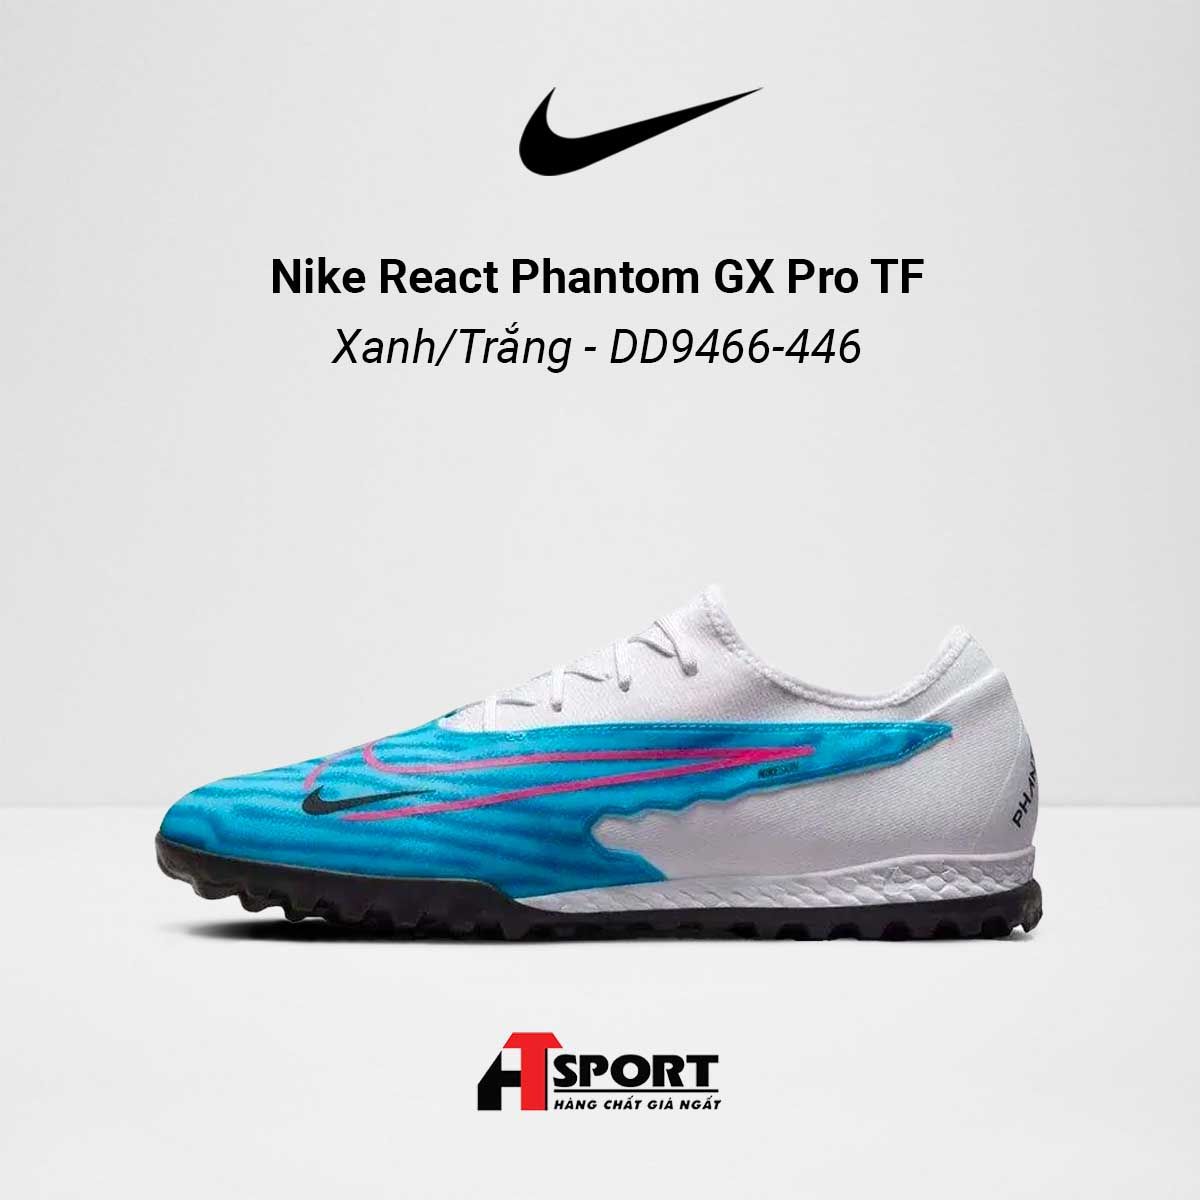  Nike React Phantom GX Xanh/Trắng Pro TF - DD9466-446 